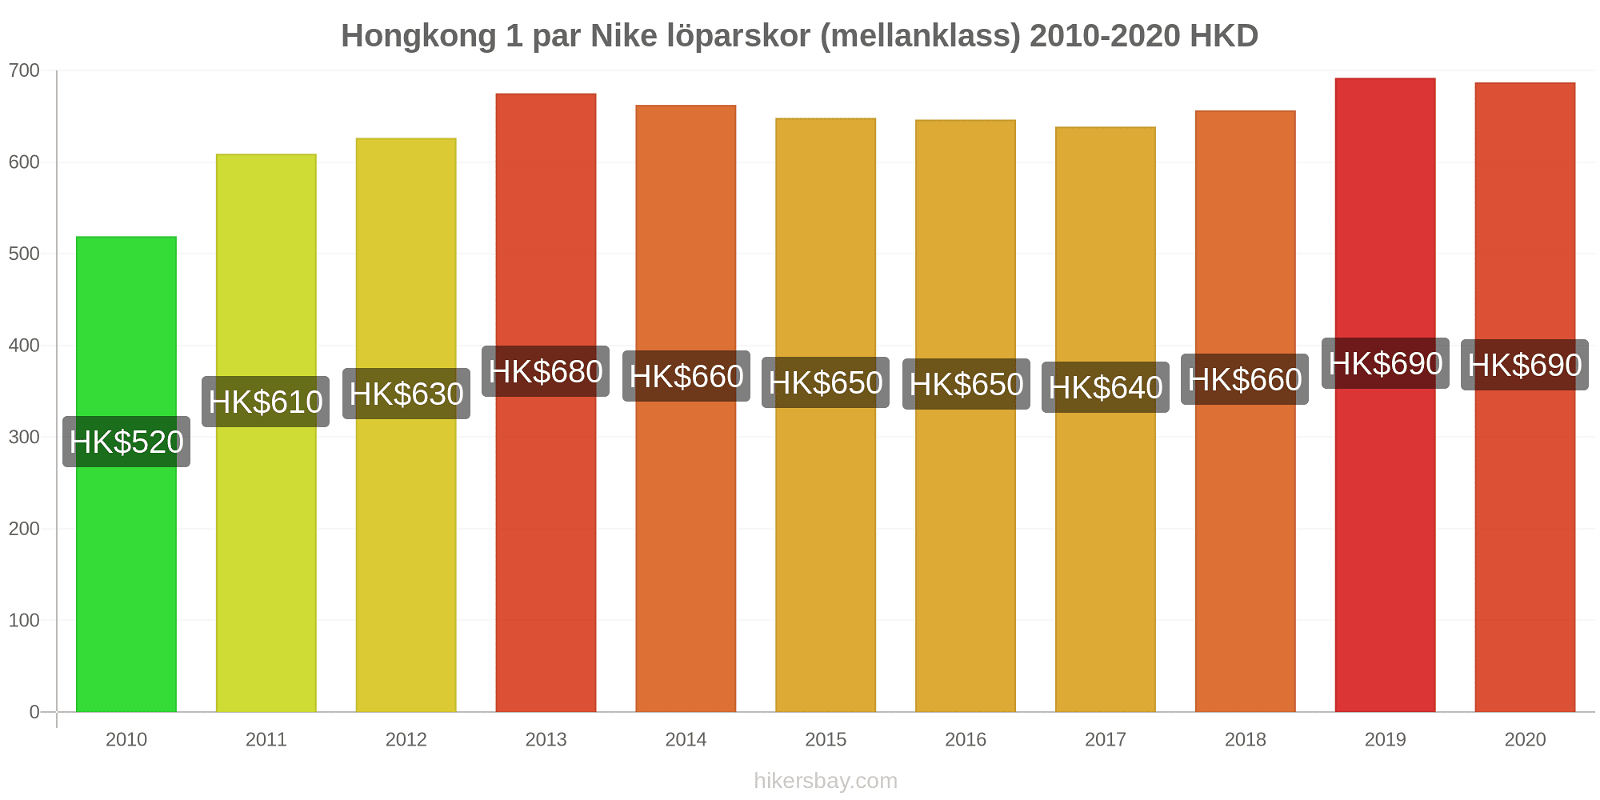 Hongkong prisförändringar 1 par Nike löparskor (mellanklass) hikersbay.com